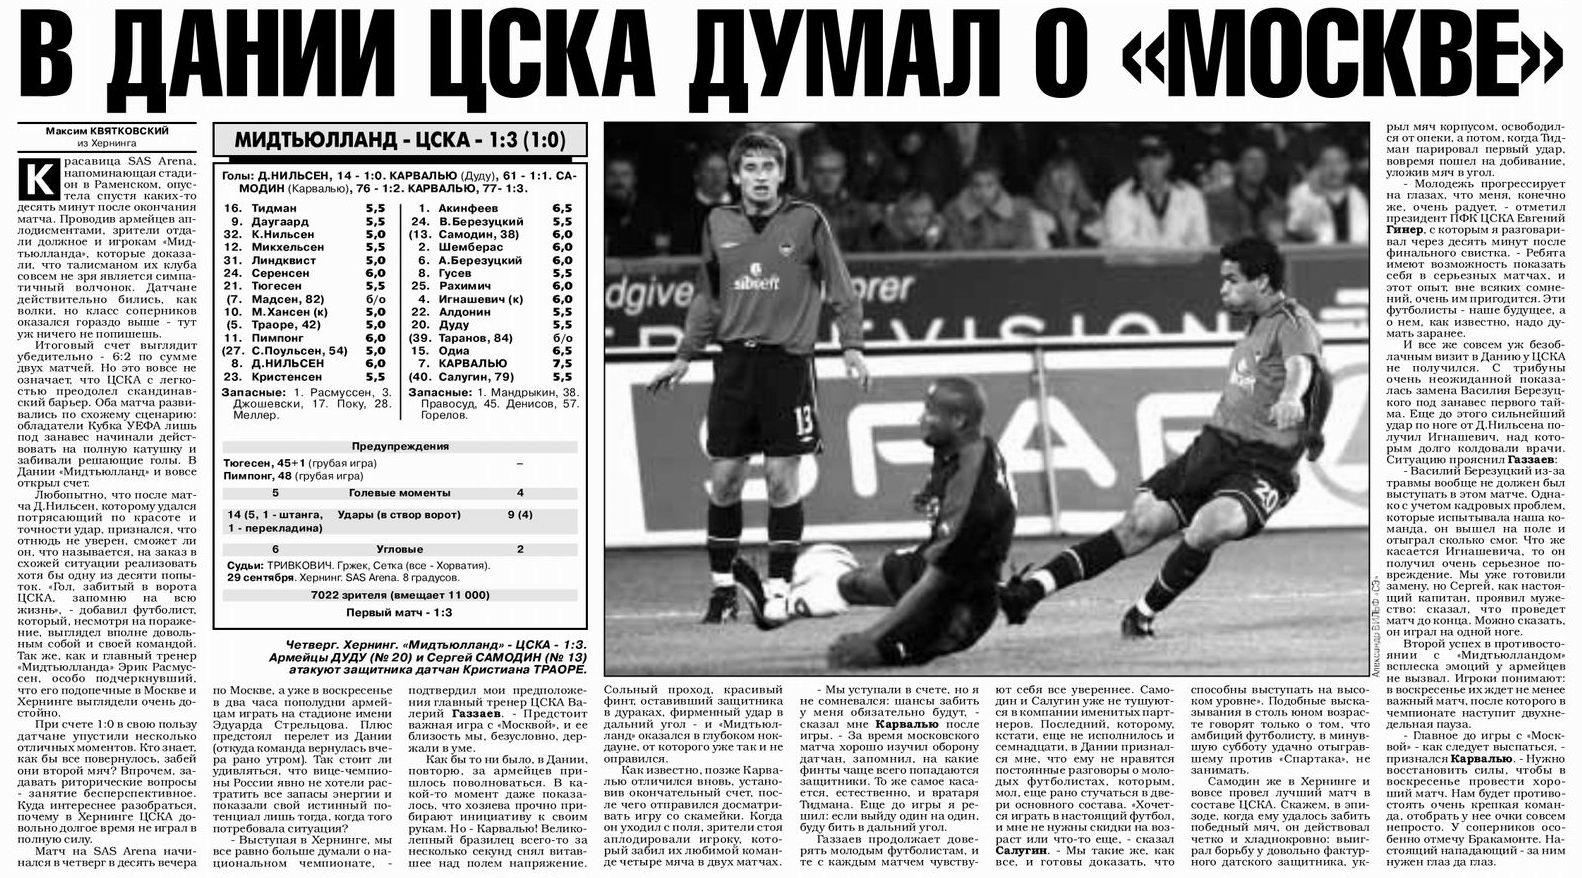 2005-09-29.Midtjylland-CSKA.2